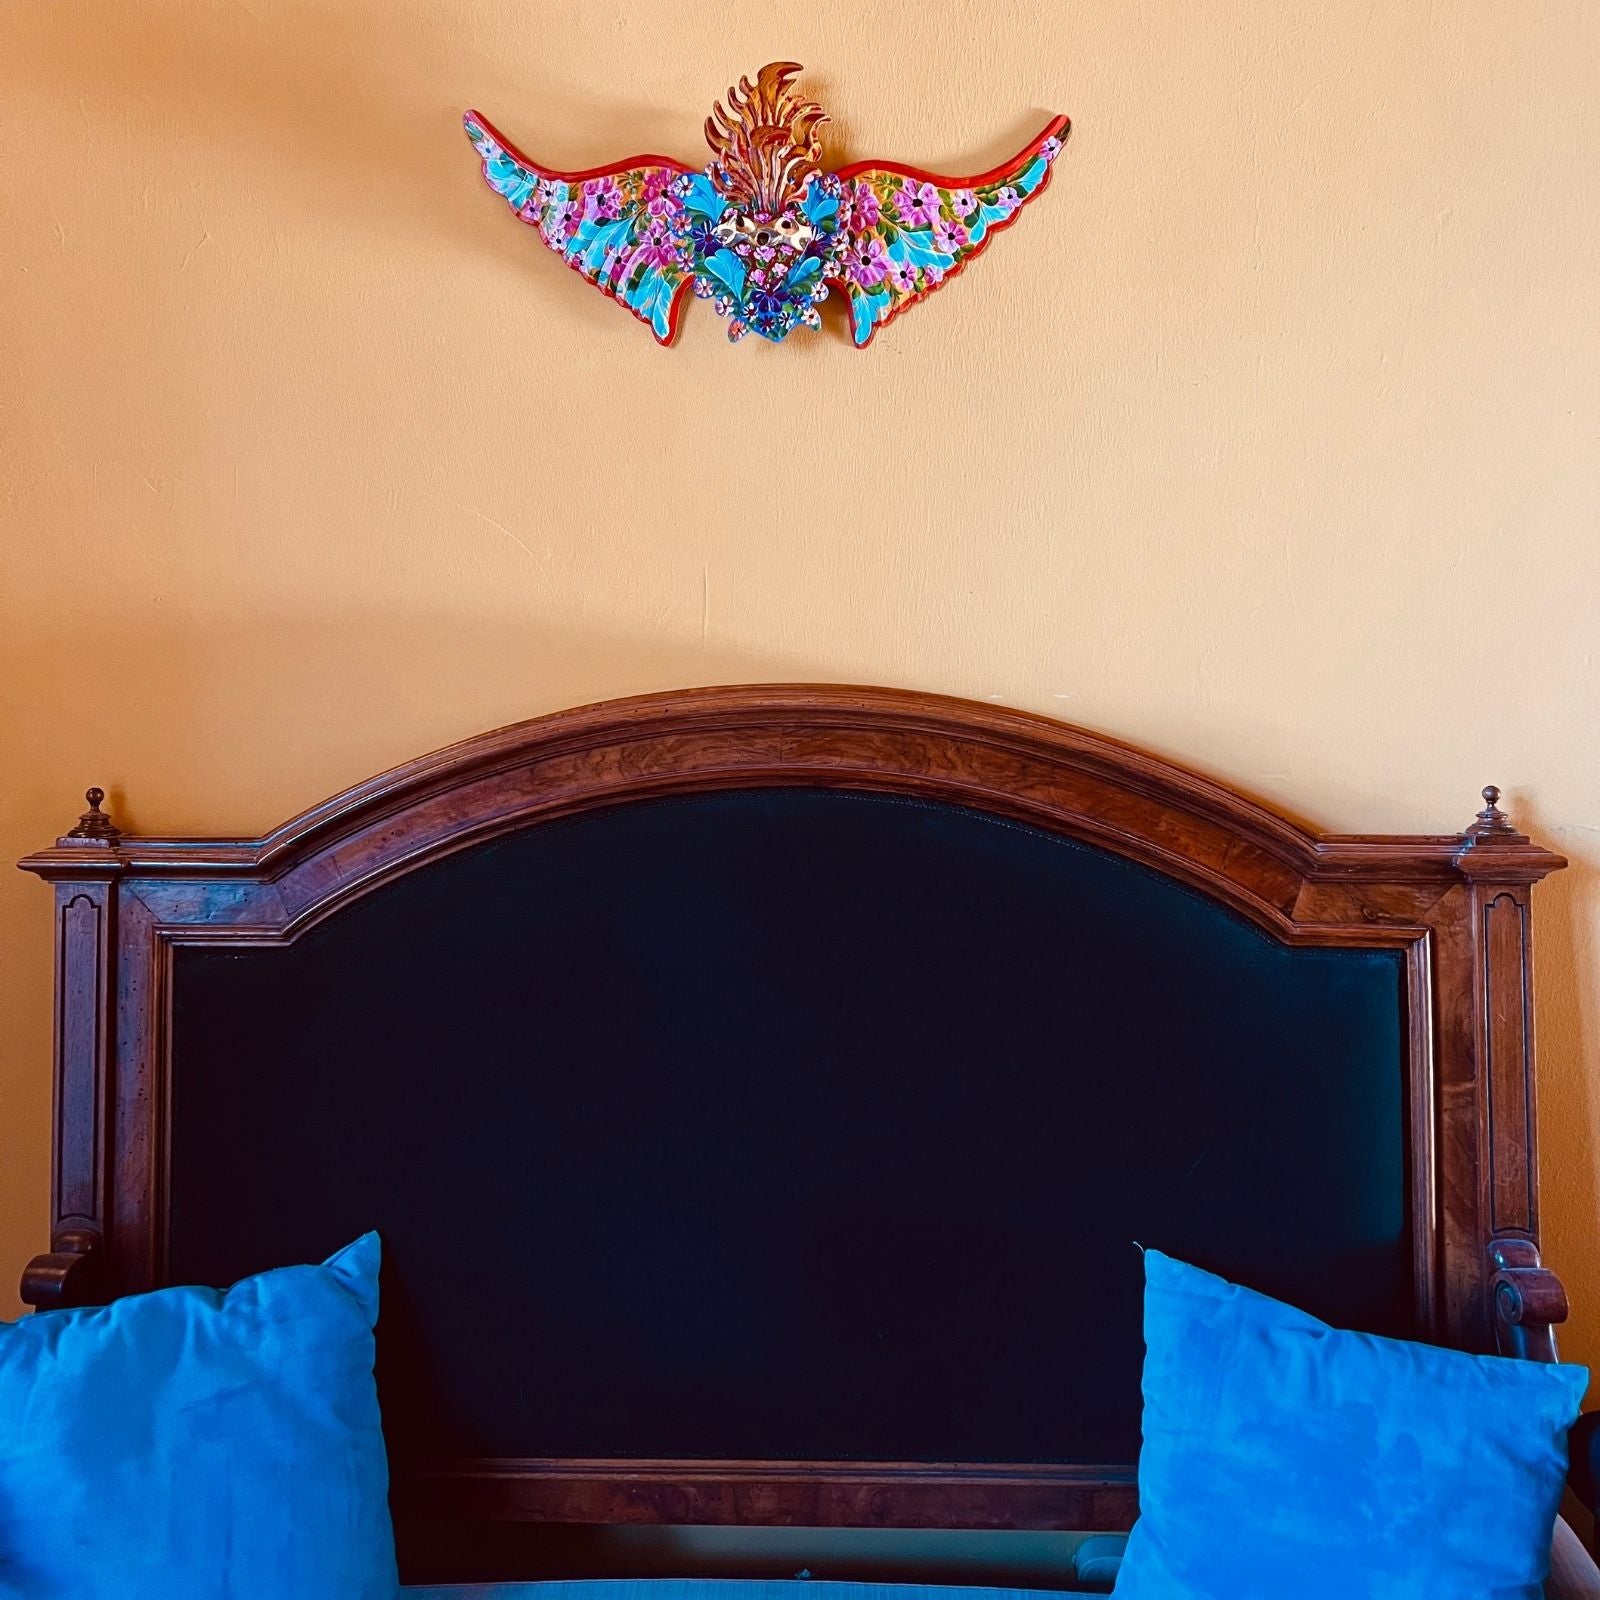 decorazione da muro 3D con cuore sacro floreale con ali Milagros artigianato messicano ex voto metallo dipinto a mano 